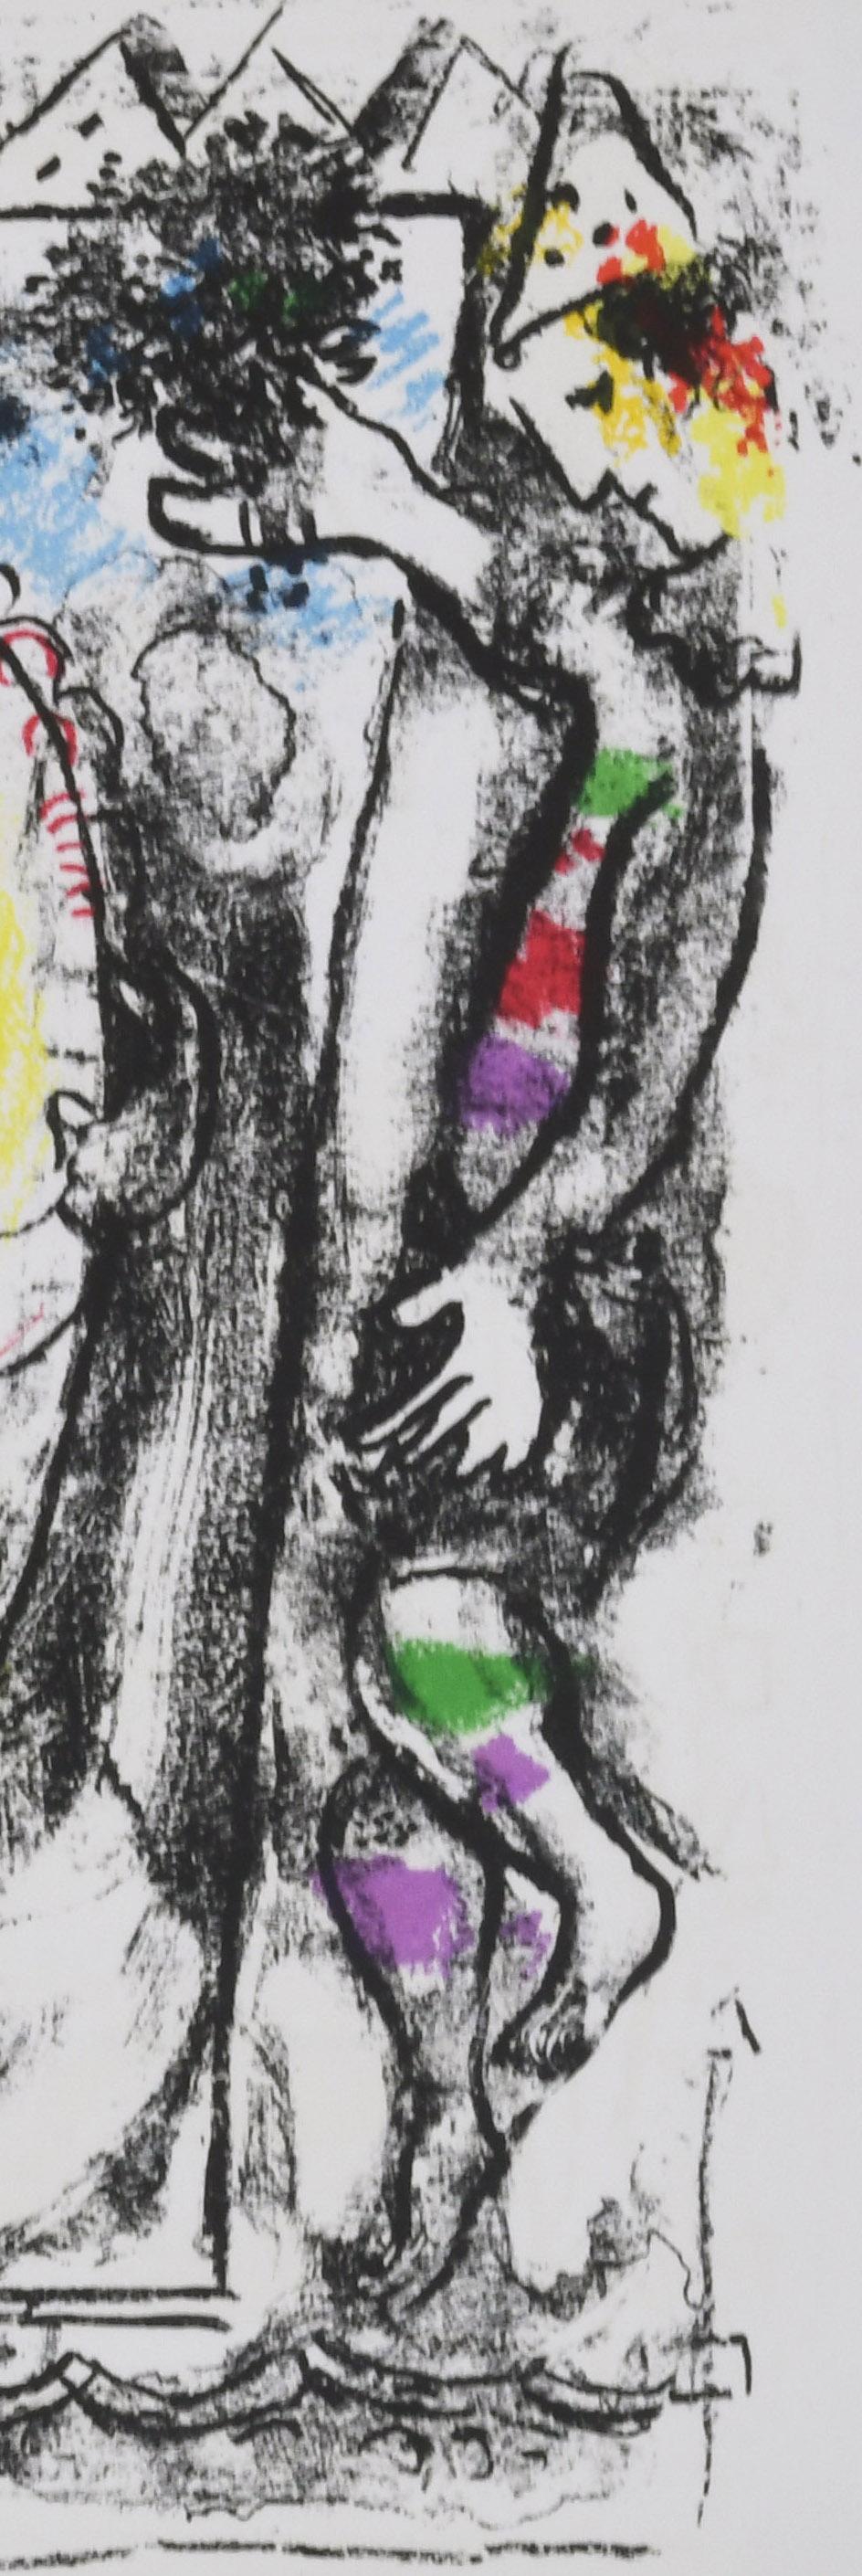 Derriere le Miroir-Double Page (Derriere le Miroir-Double Page)
Original couleur llithogragp créé par l'artiste pour cette ublication, 1964
Non signé tel que publié
D'après : Derriere le Miroir Chagall : Dessins et Lavis, Exposition Chagall,